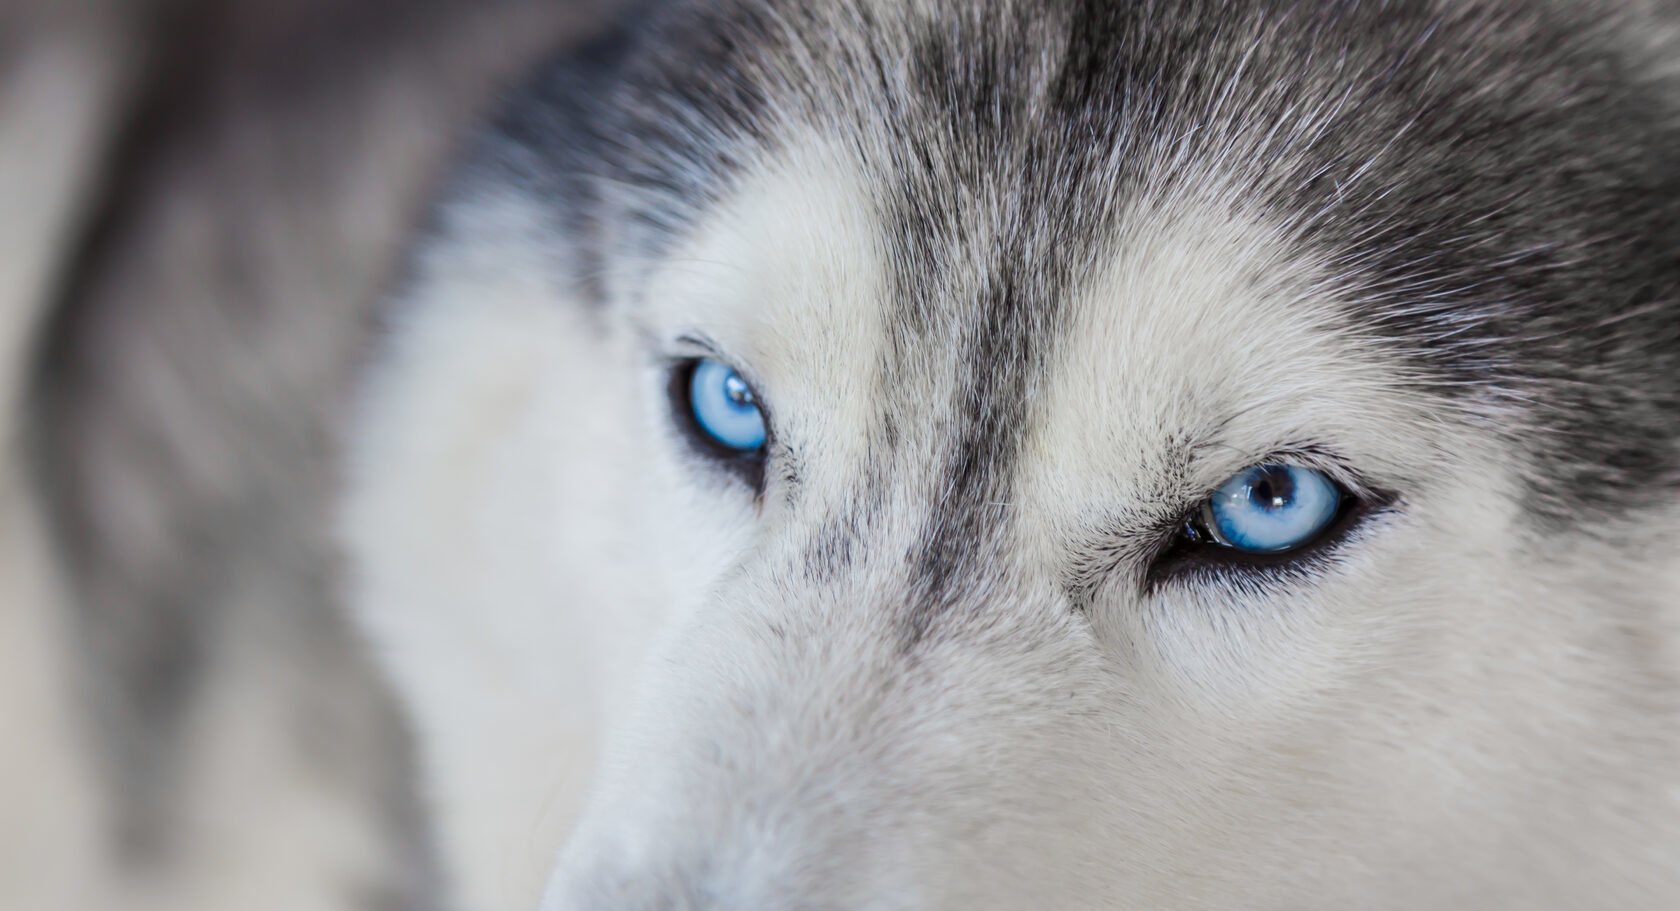 Глаза голубой собаки читать. Хаски с голубыми глазами. Хаски собака фото с голубыми глазами. Хаска девочка с синими глазами. Хаски красивая с голубыми глазами девочка.